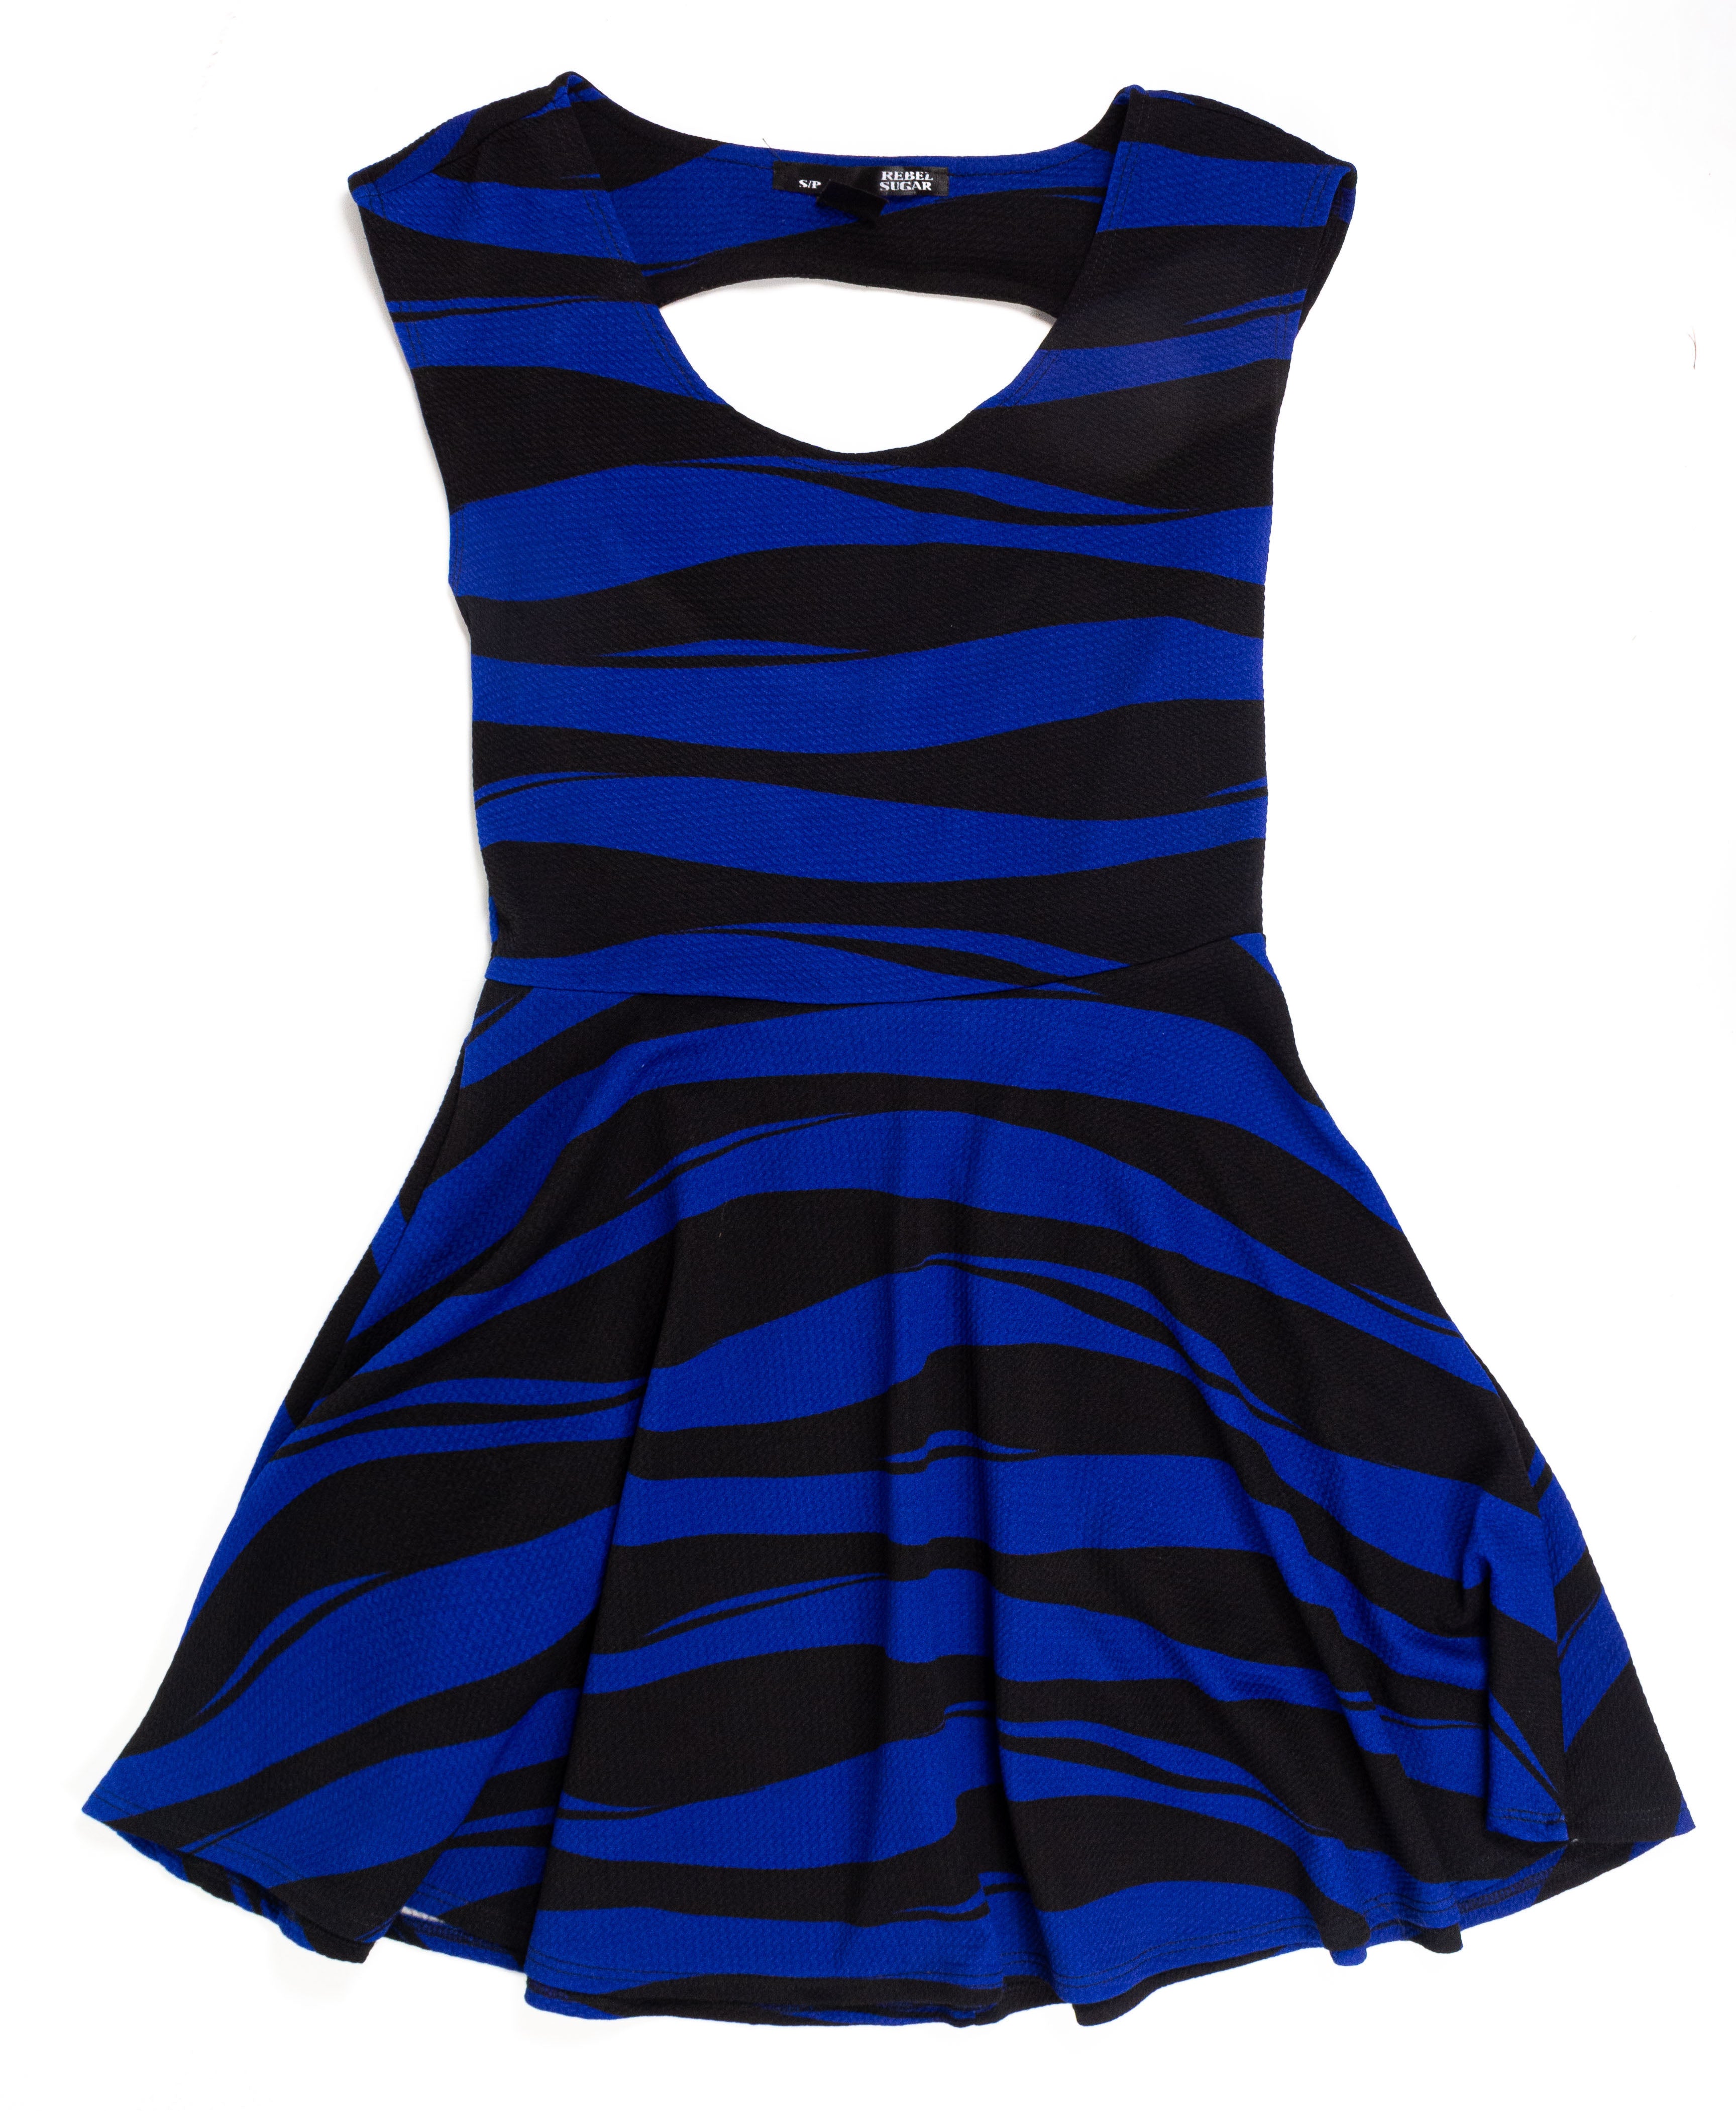 Vestido Corto Formal Rebel Sugar - (Talla: S/P) Azul/Negro